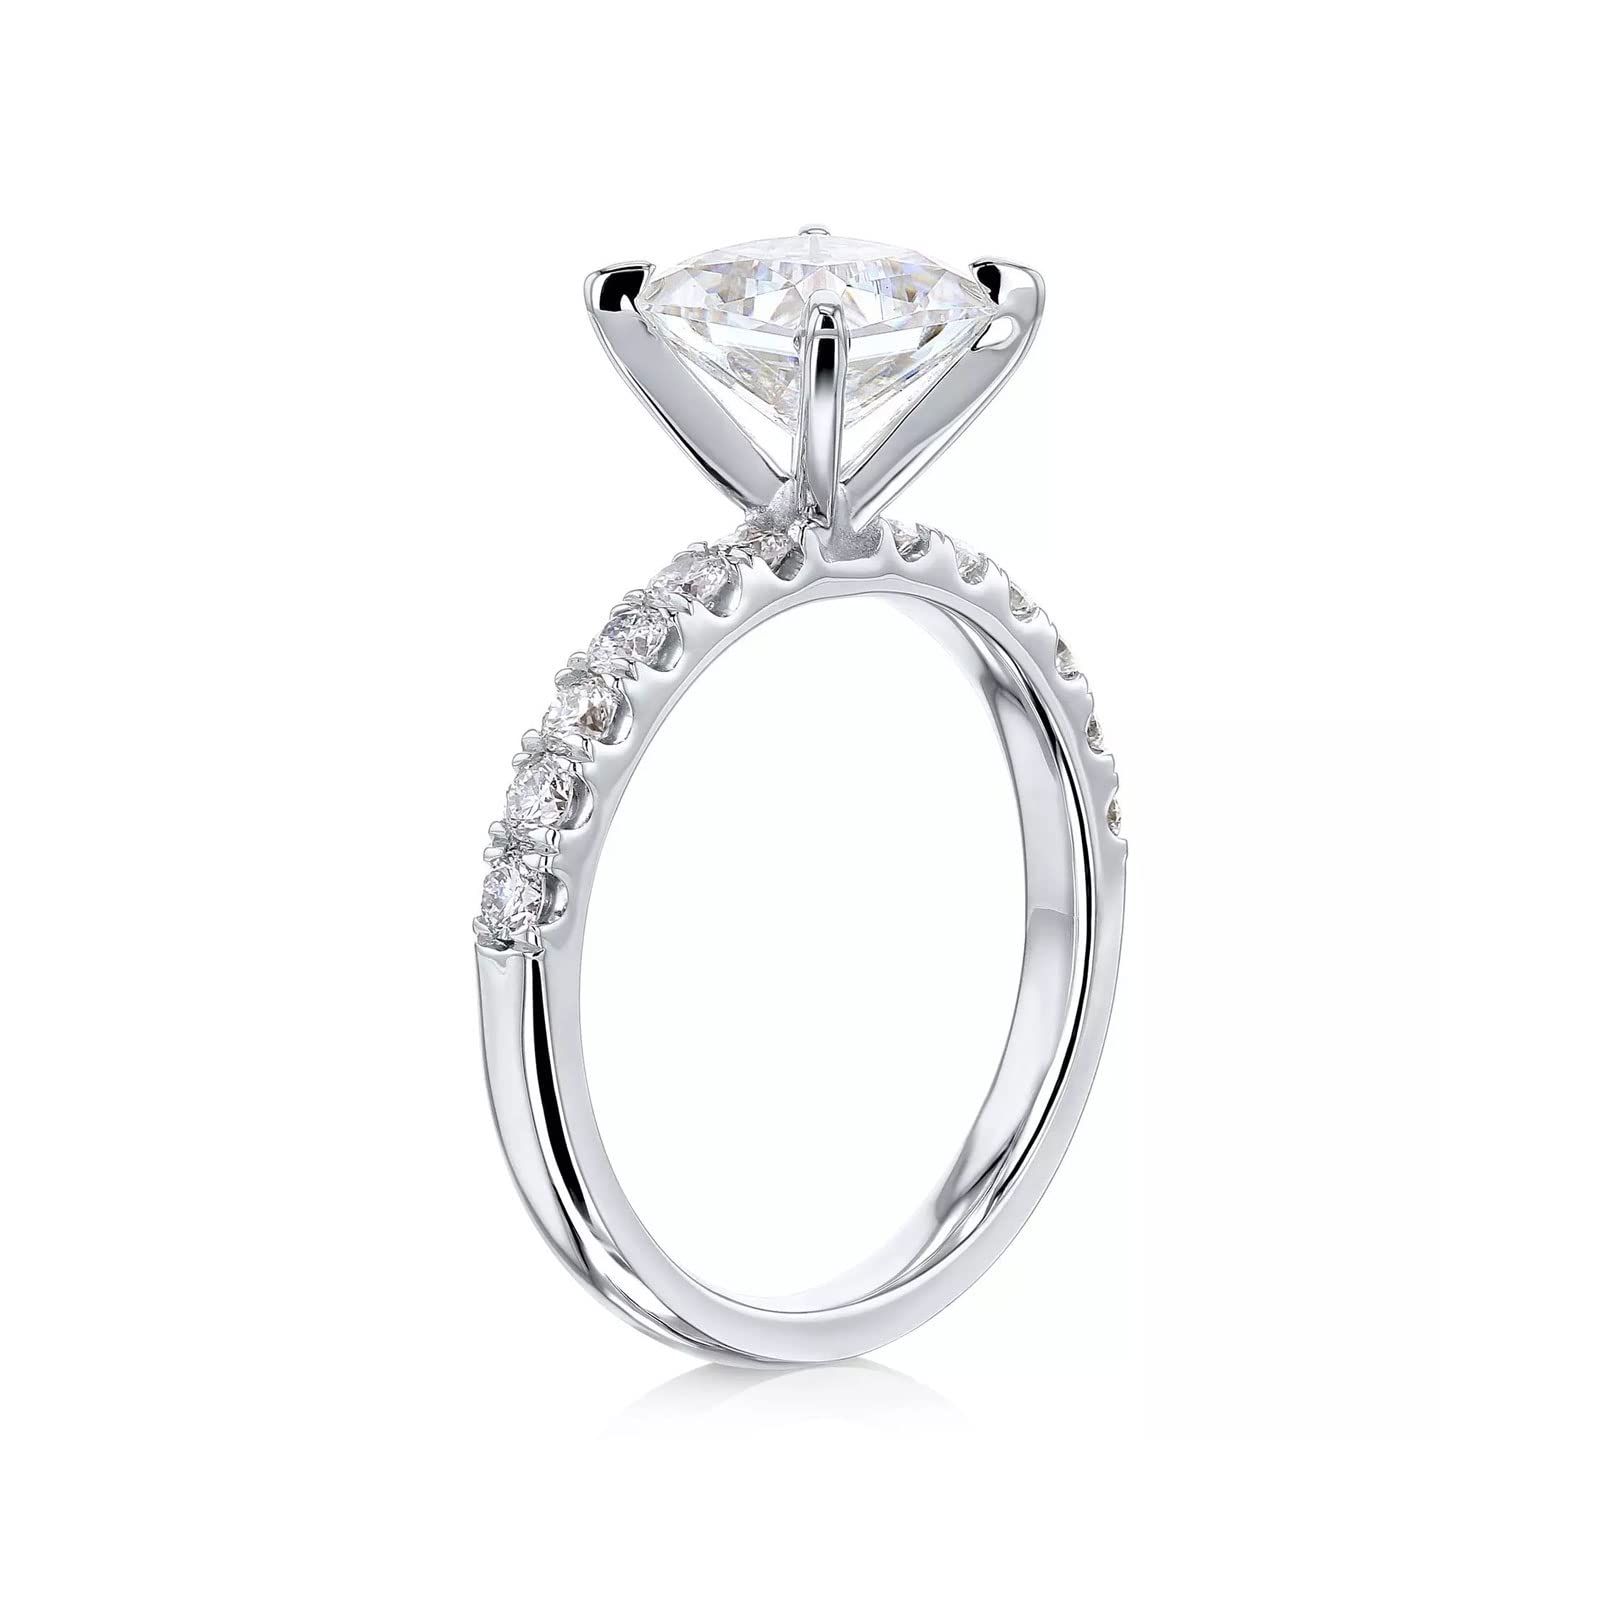 MRENITE 1-4 Carat 10K 14K 18K Gold Princess Cut Moissanite Engagement Ring for Women VVS1 Clarity D Color Moissanite Wedding Ring